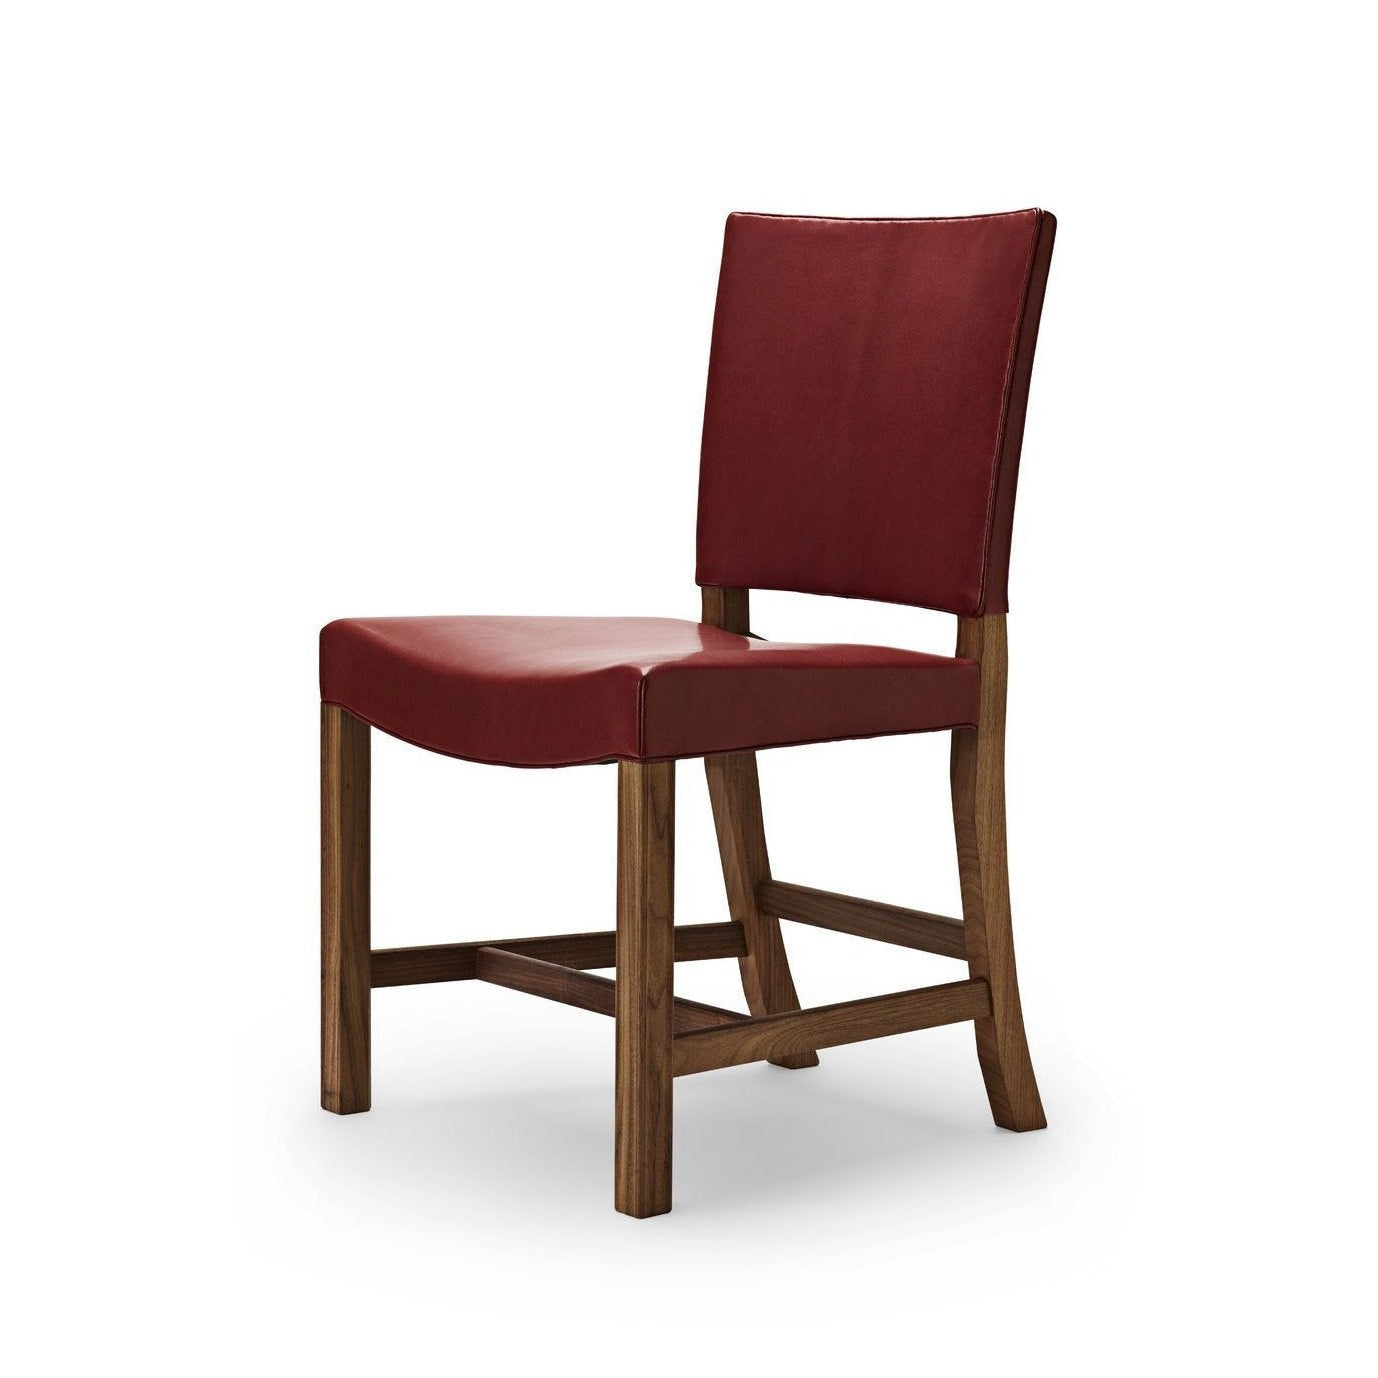 Carl Hansen KK47510 Červená židle, lakovaná ořechová/červená kozí